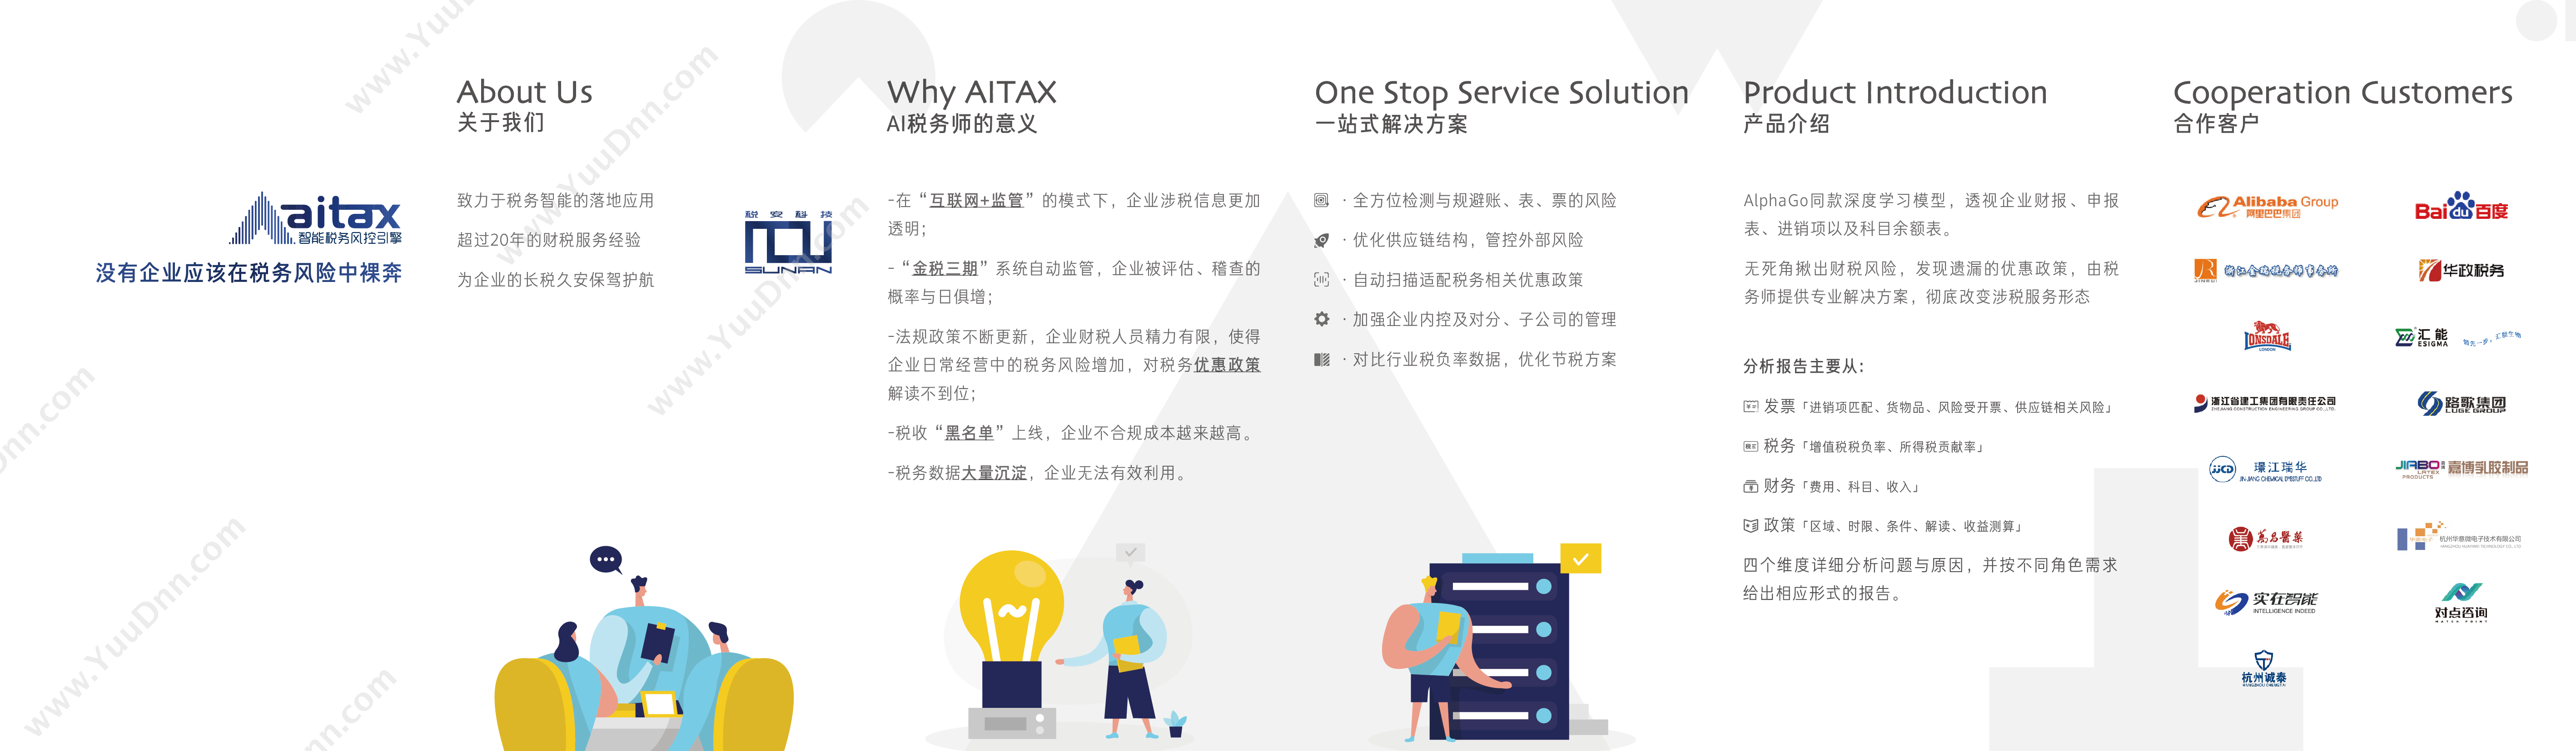 上海汉升软件有限公司 AI税务师 财务管理